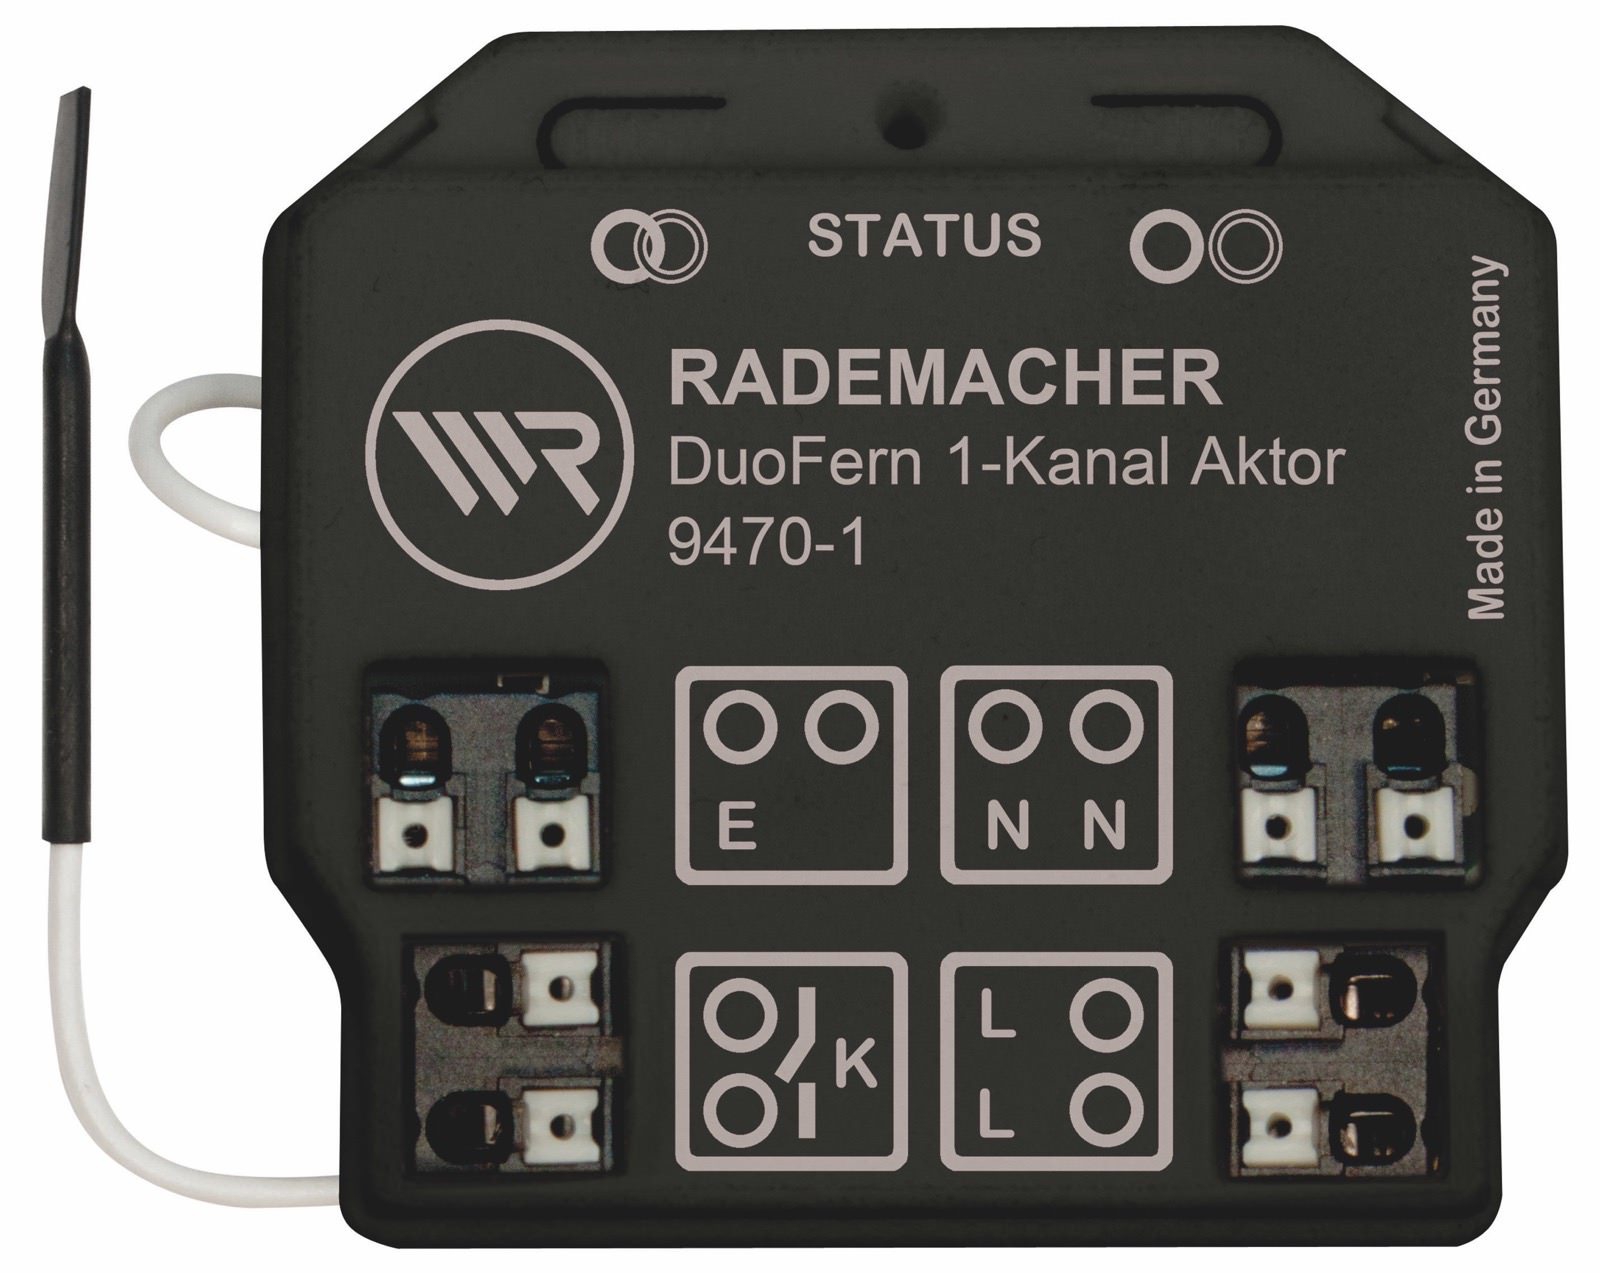 Rademacher DuoFern Universal-Aktor 9470-1, 1-Kanal Unterputz Funkempfänger